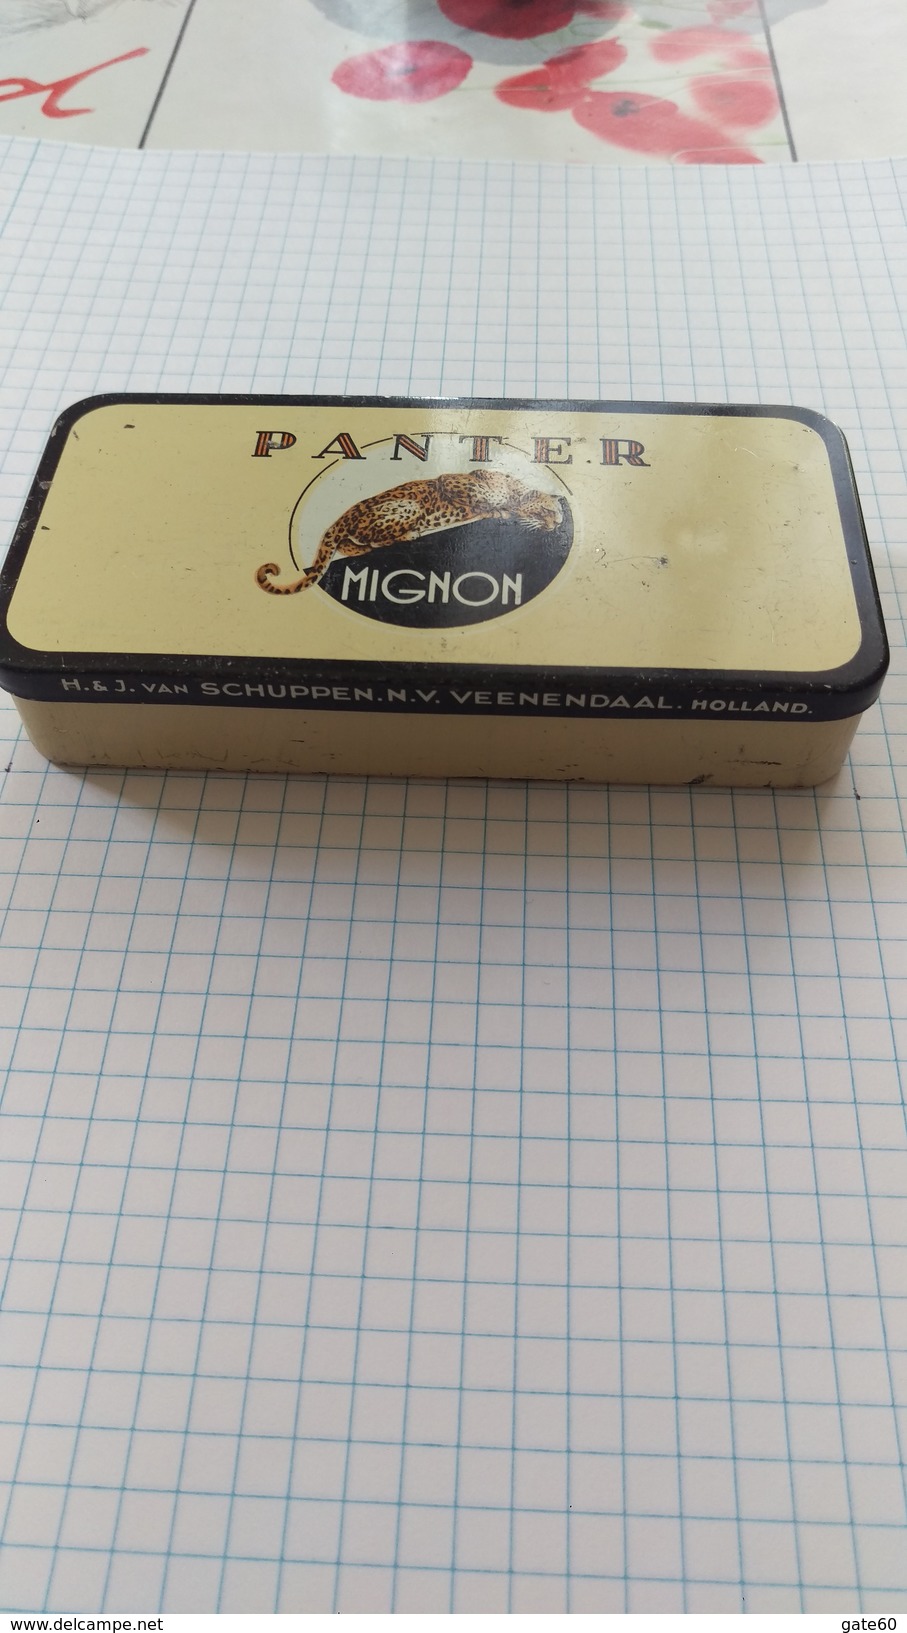 Panter Mignon Panter Sigarenfabrieken H. & J.Van Schuppen  Veenendaal - Holland - Schnupftabakdosen (leer)